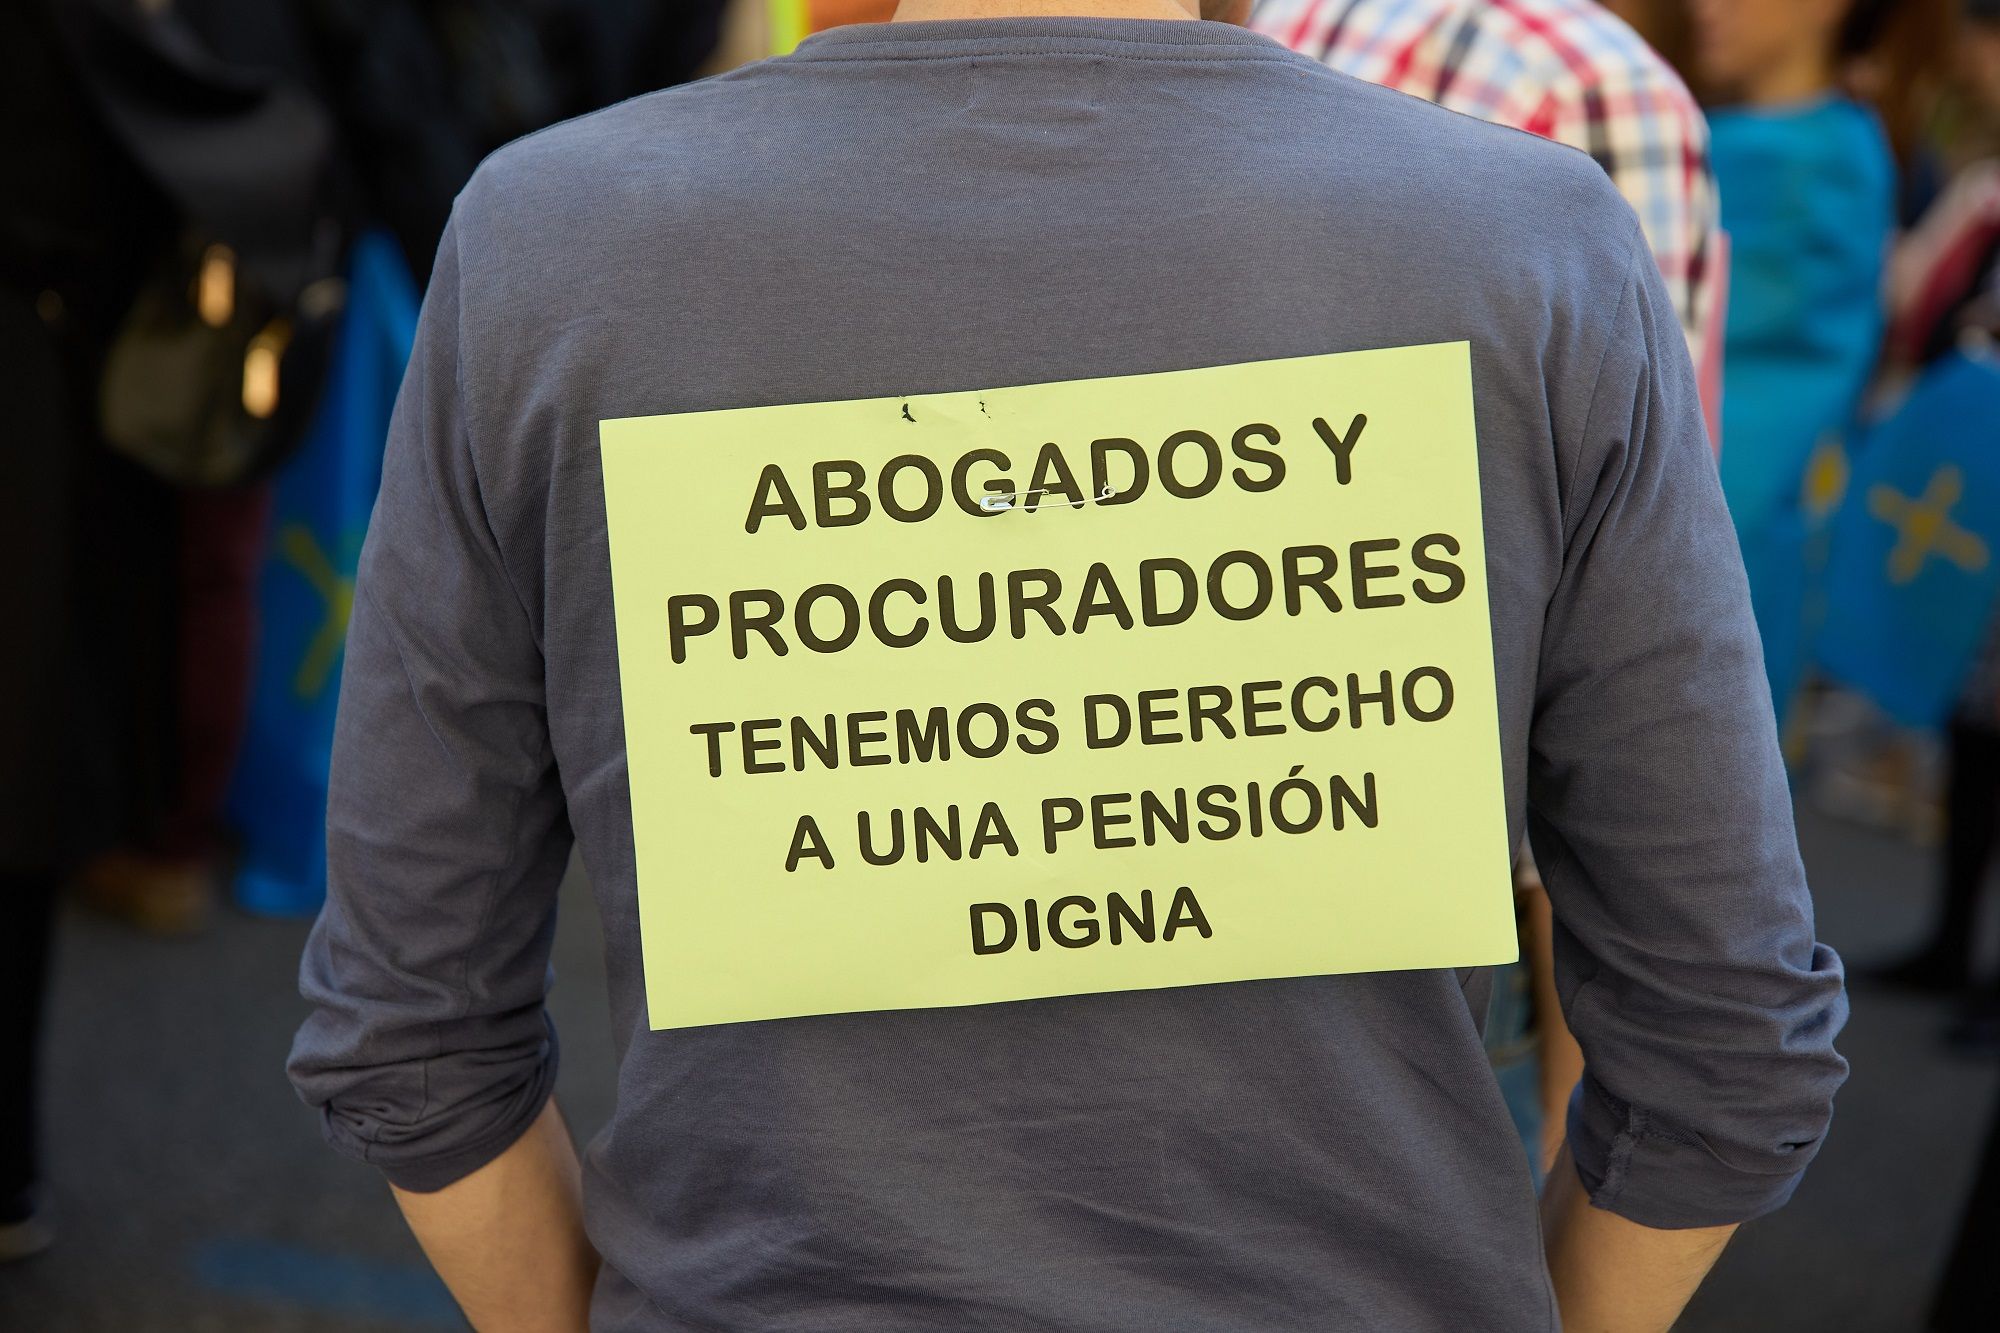 Los abogados mutualistas con pensiones irrisorias rechazan la propuesta del Gobierno: "Es un parche"